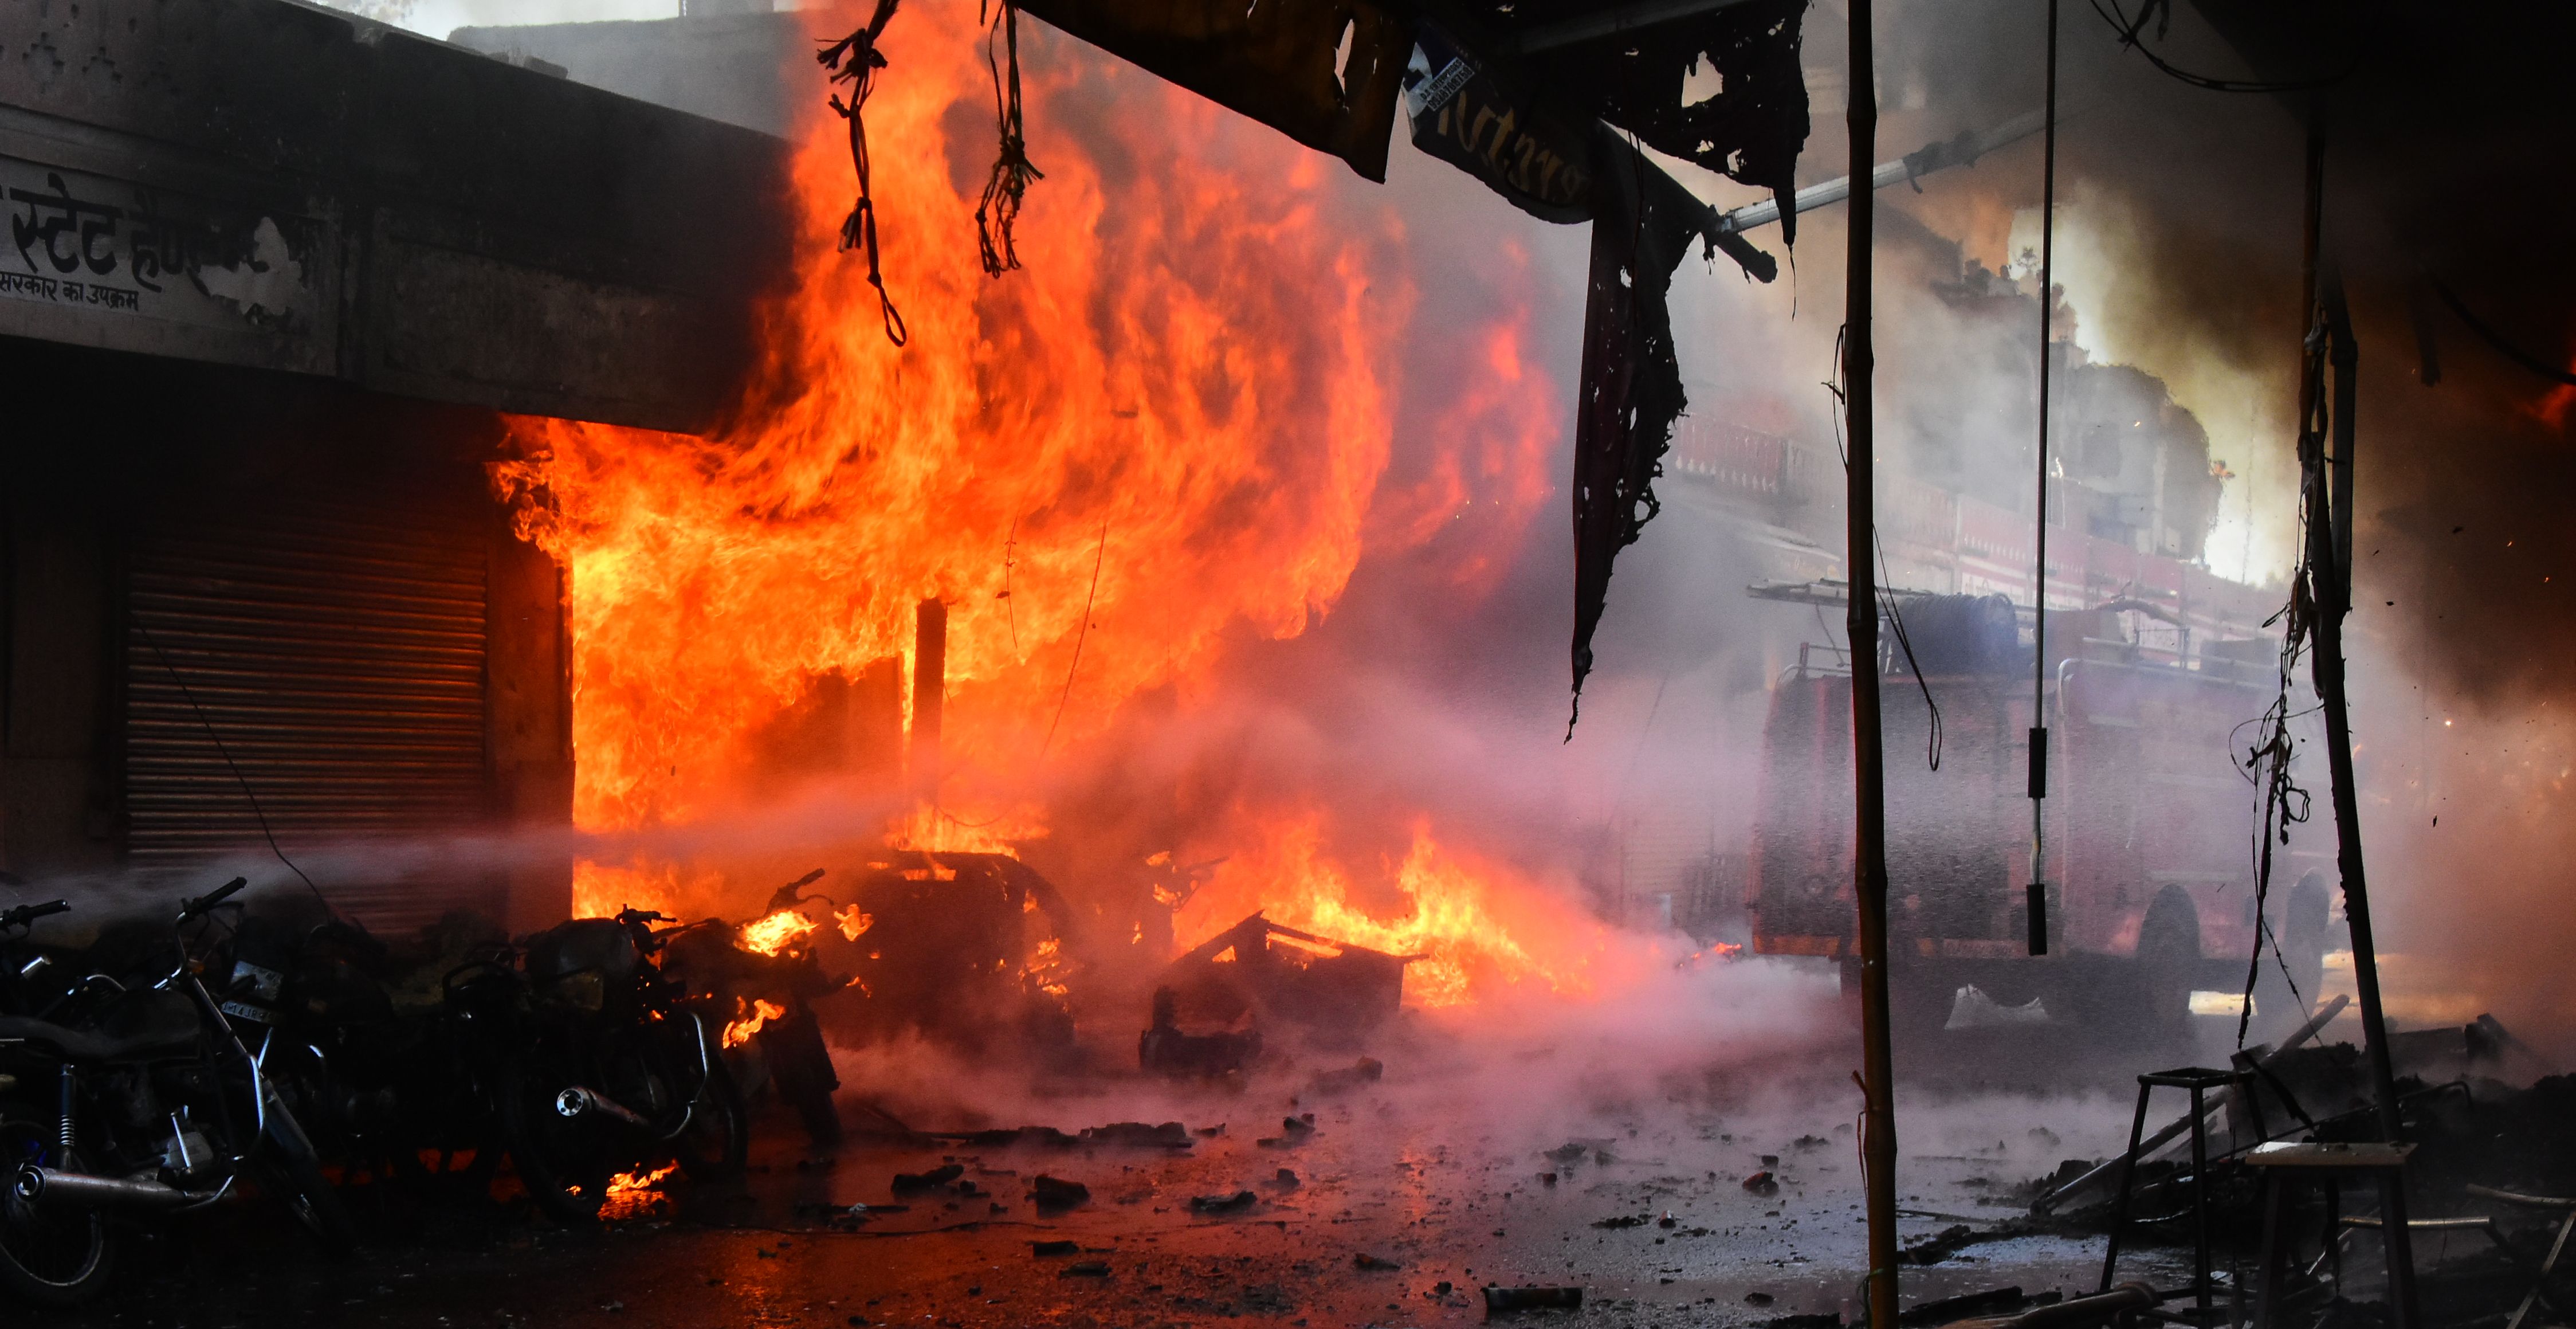 इंदिरा बाजार में पटाखों की दुकान में लगी भीषण आग